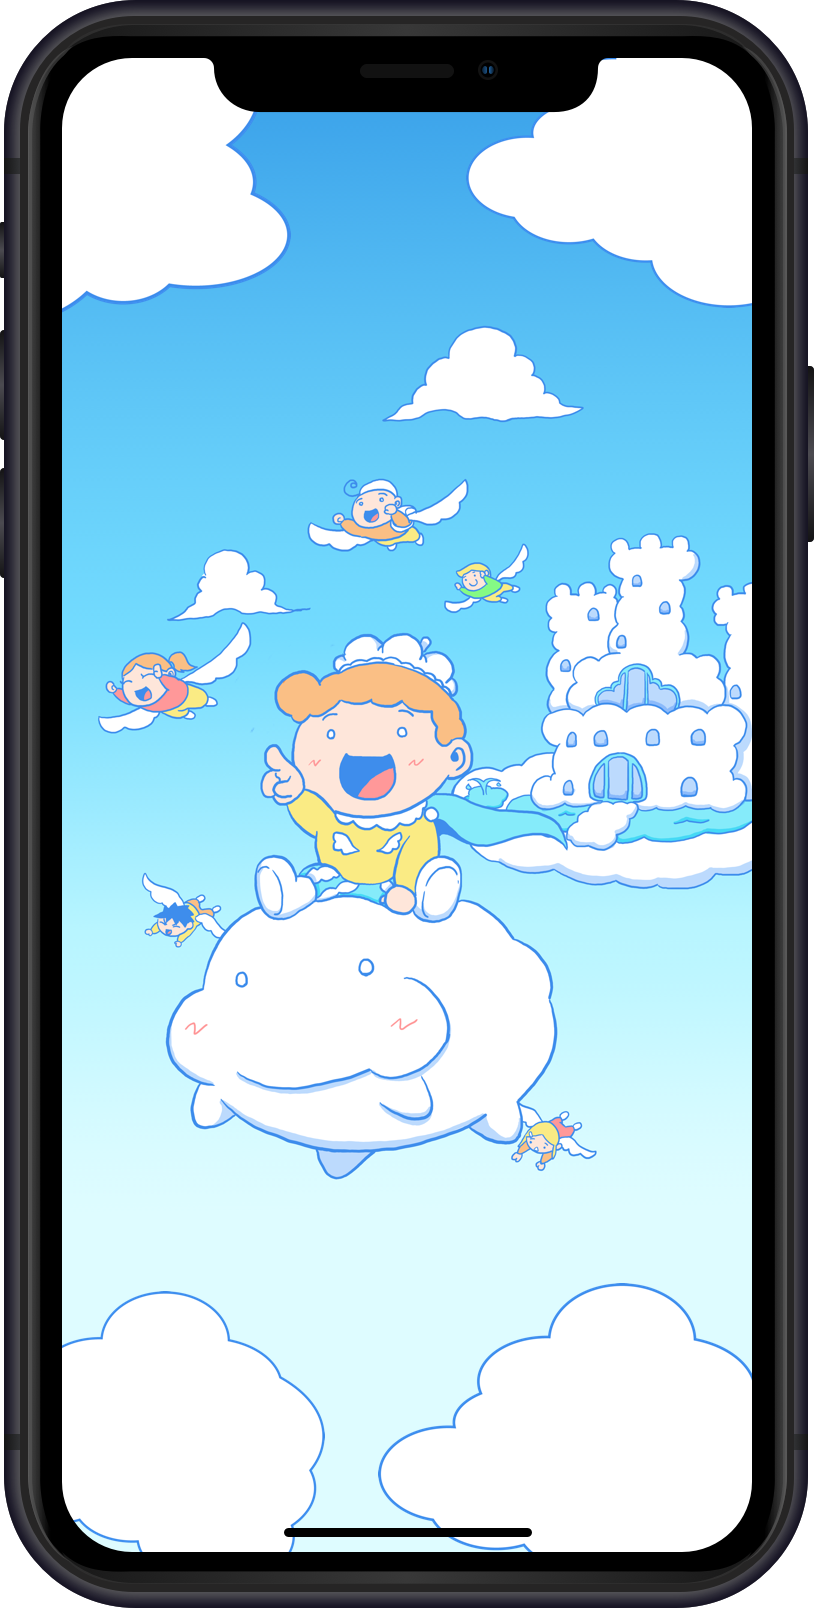 雲の国のイカルス王子とくもんちょの友情の物語、子供向け絵本アプリ